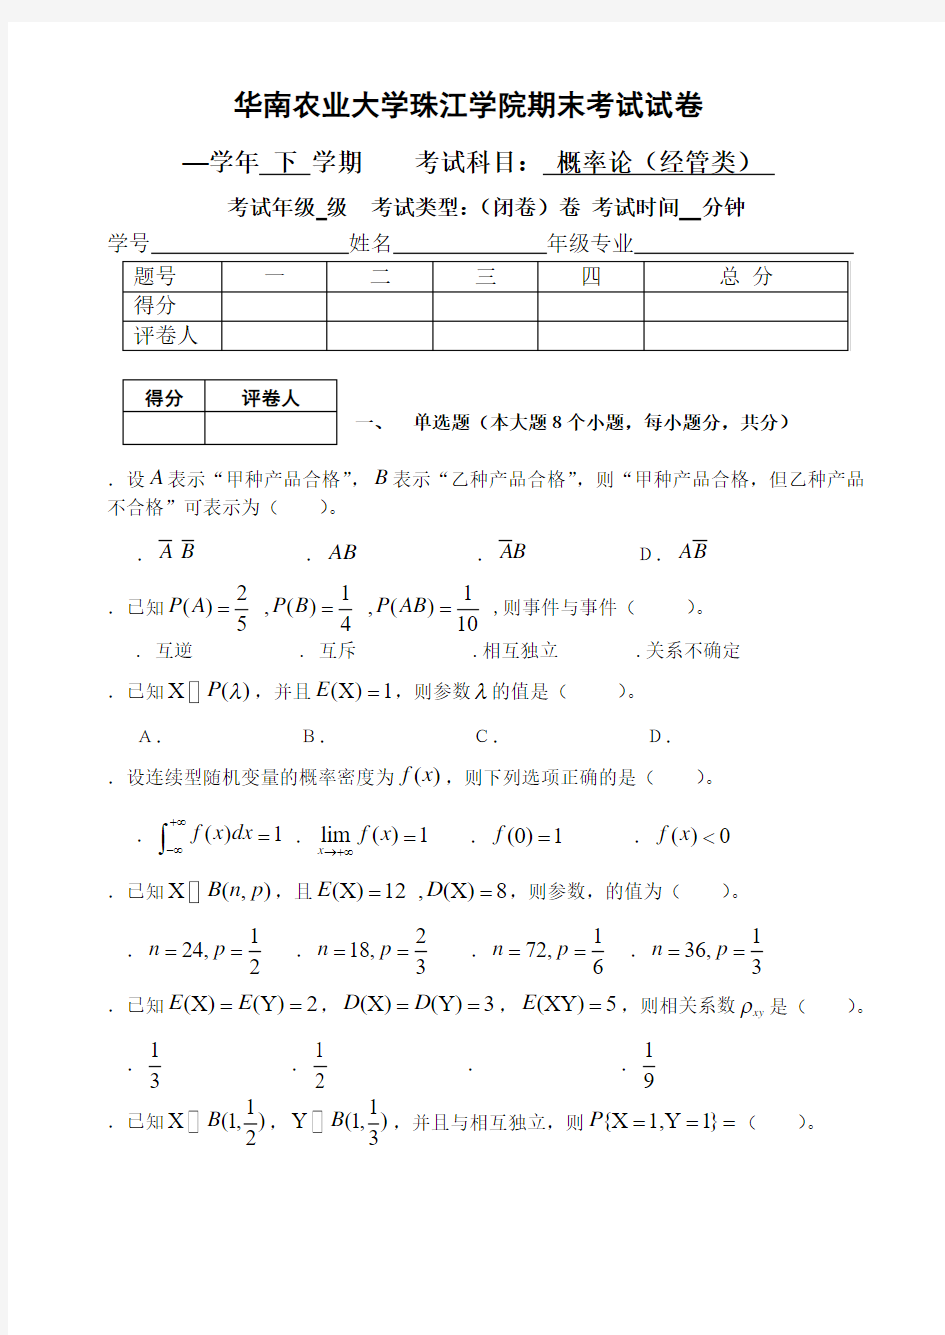 华南农业大学珠江学院期末考试试卷(同名36716)